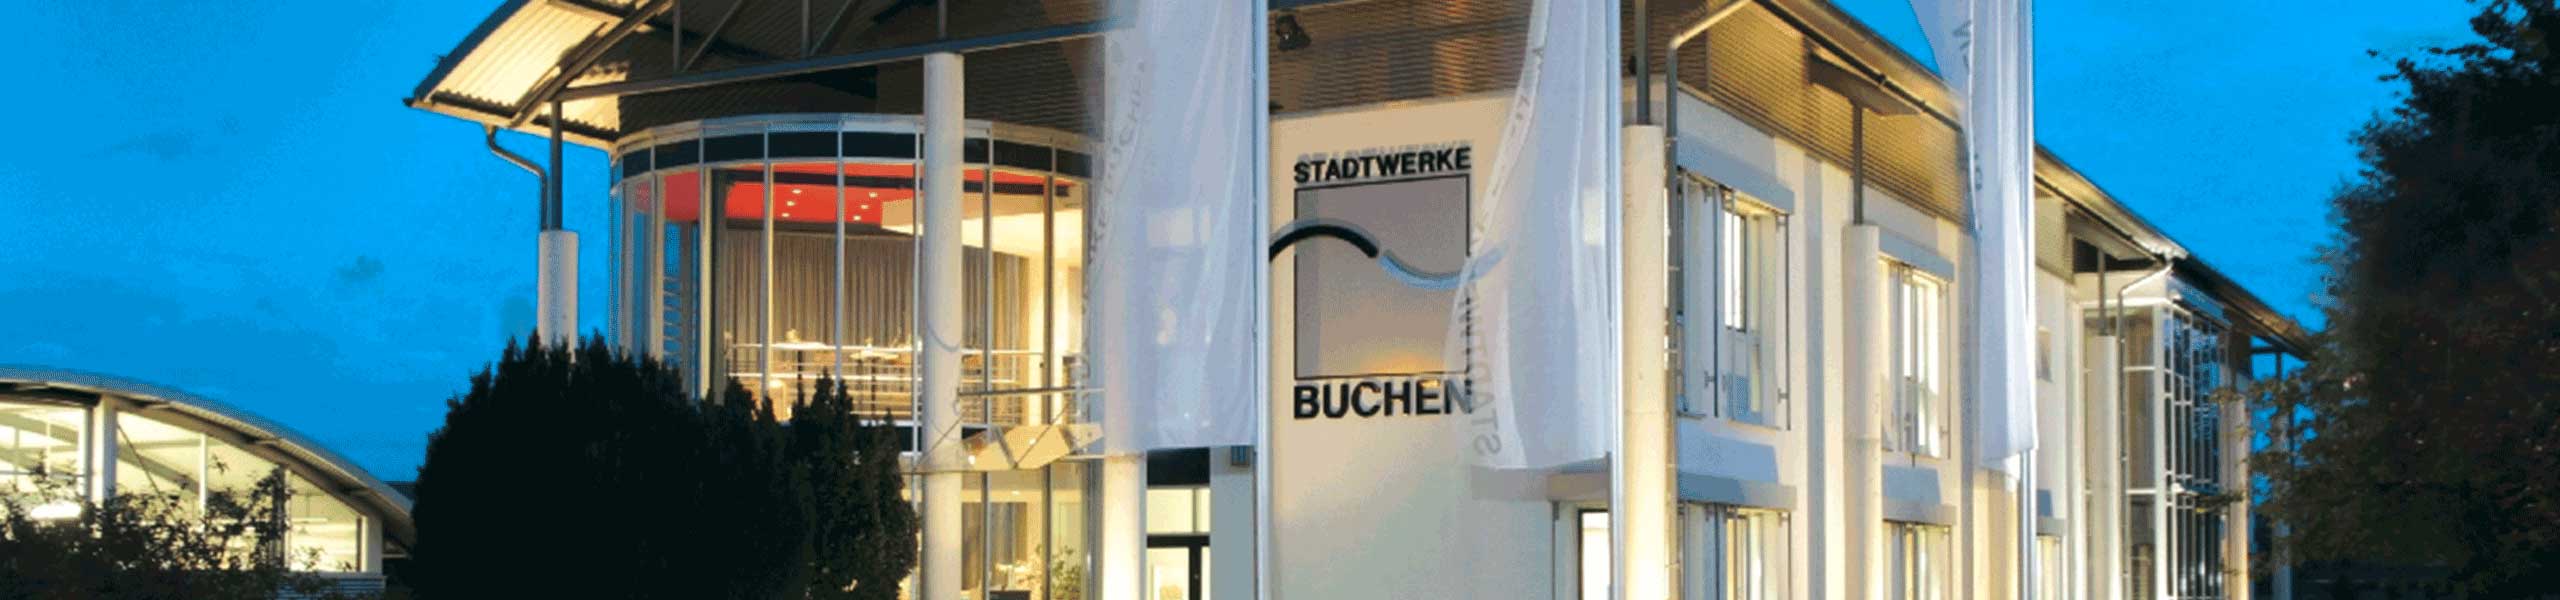 Stadtwerke Buchen GmbH & Co KG - Sachbearbeiter Buchhaltung / Kasse (m/w/d)